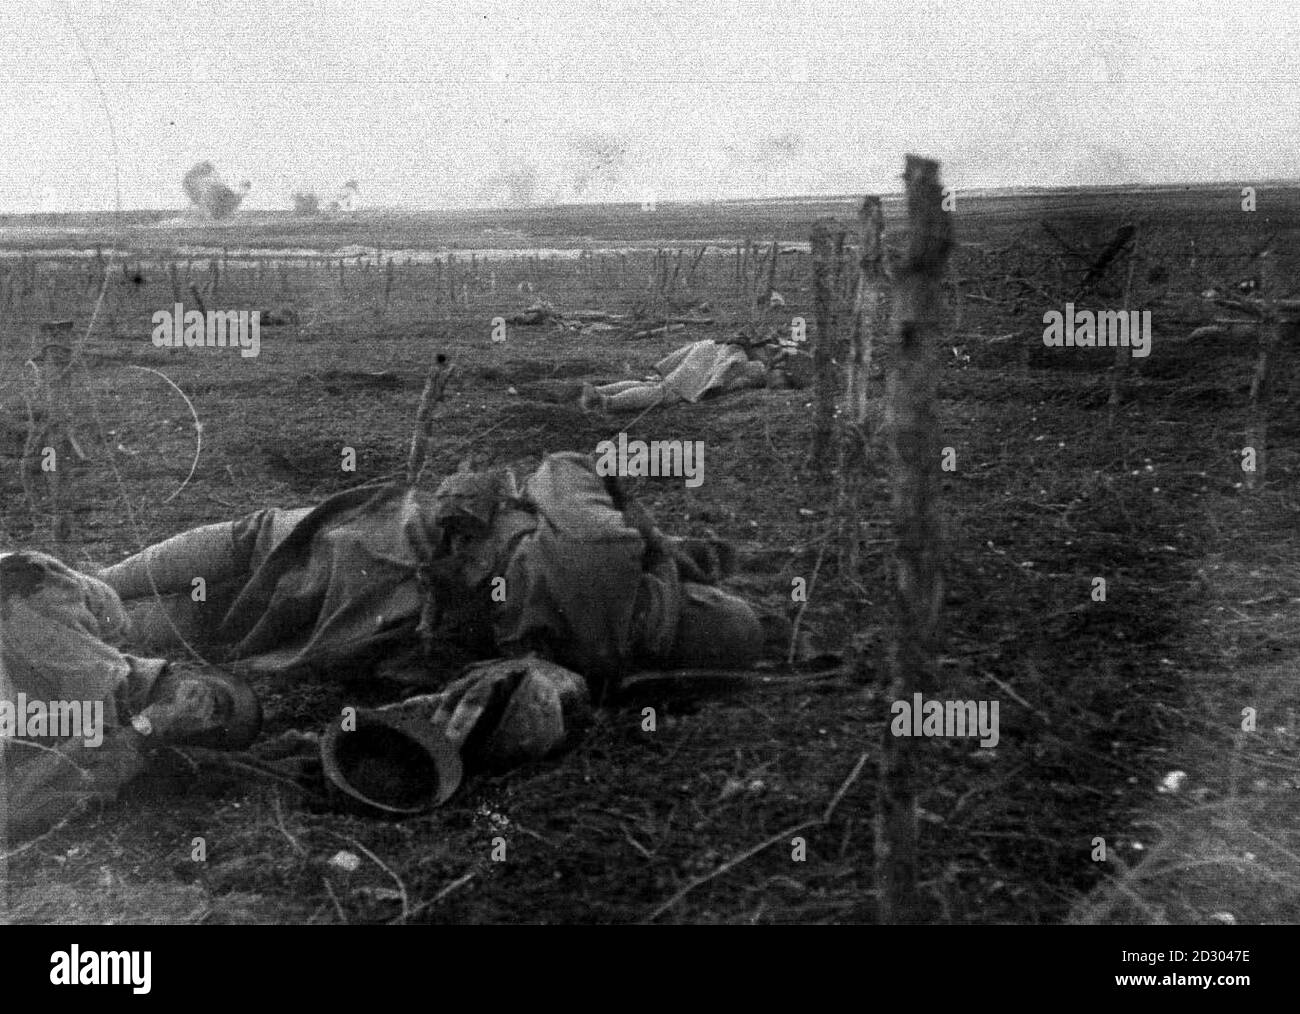 Soldati francesi, dopo aver superato il filo spinato, stesi morti vicino alle linee tedesche, durante la prima guerra mondiale nel 1915. Foto parte della collezione PA della prima guerra mondiale. Foto Stock